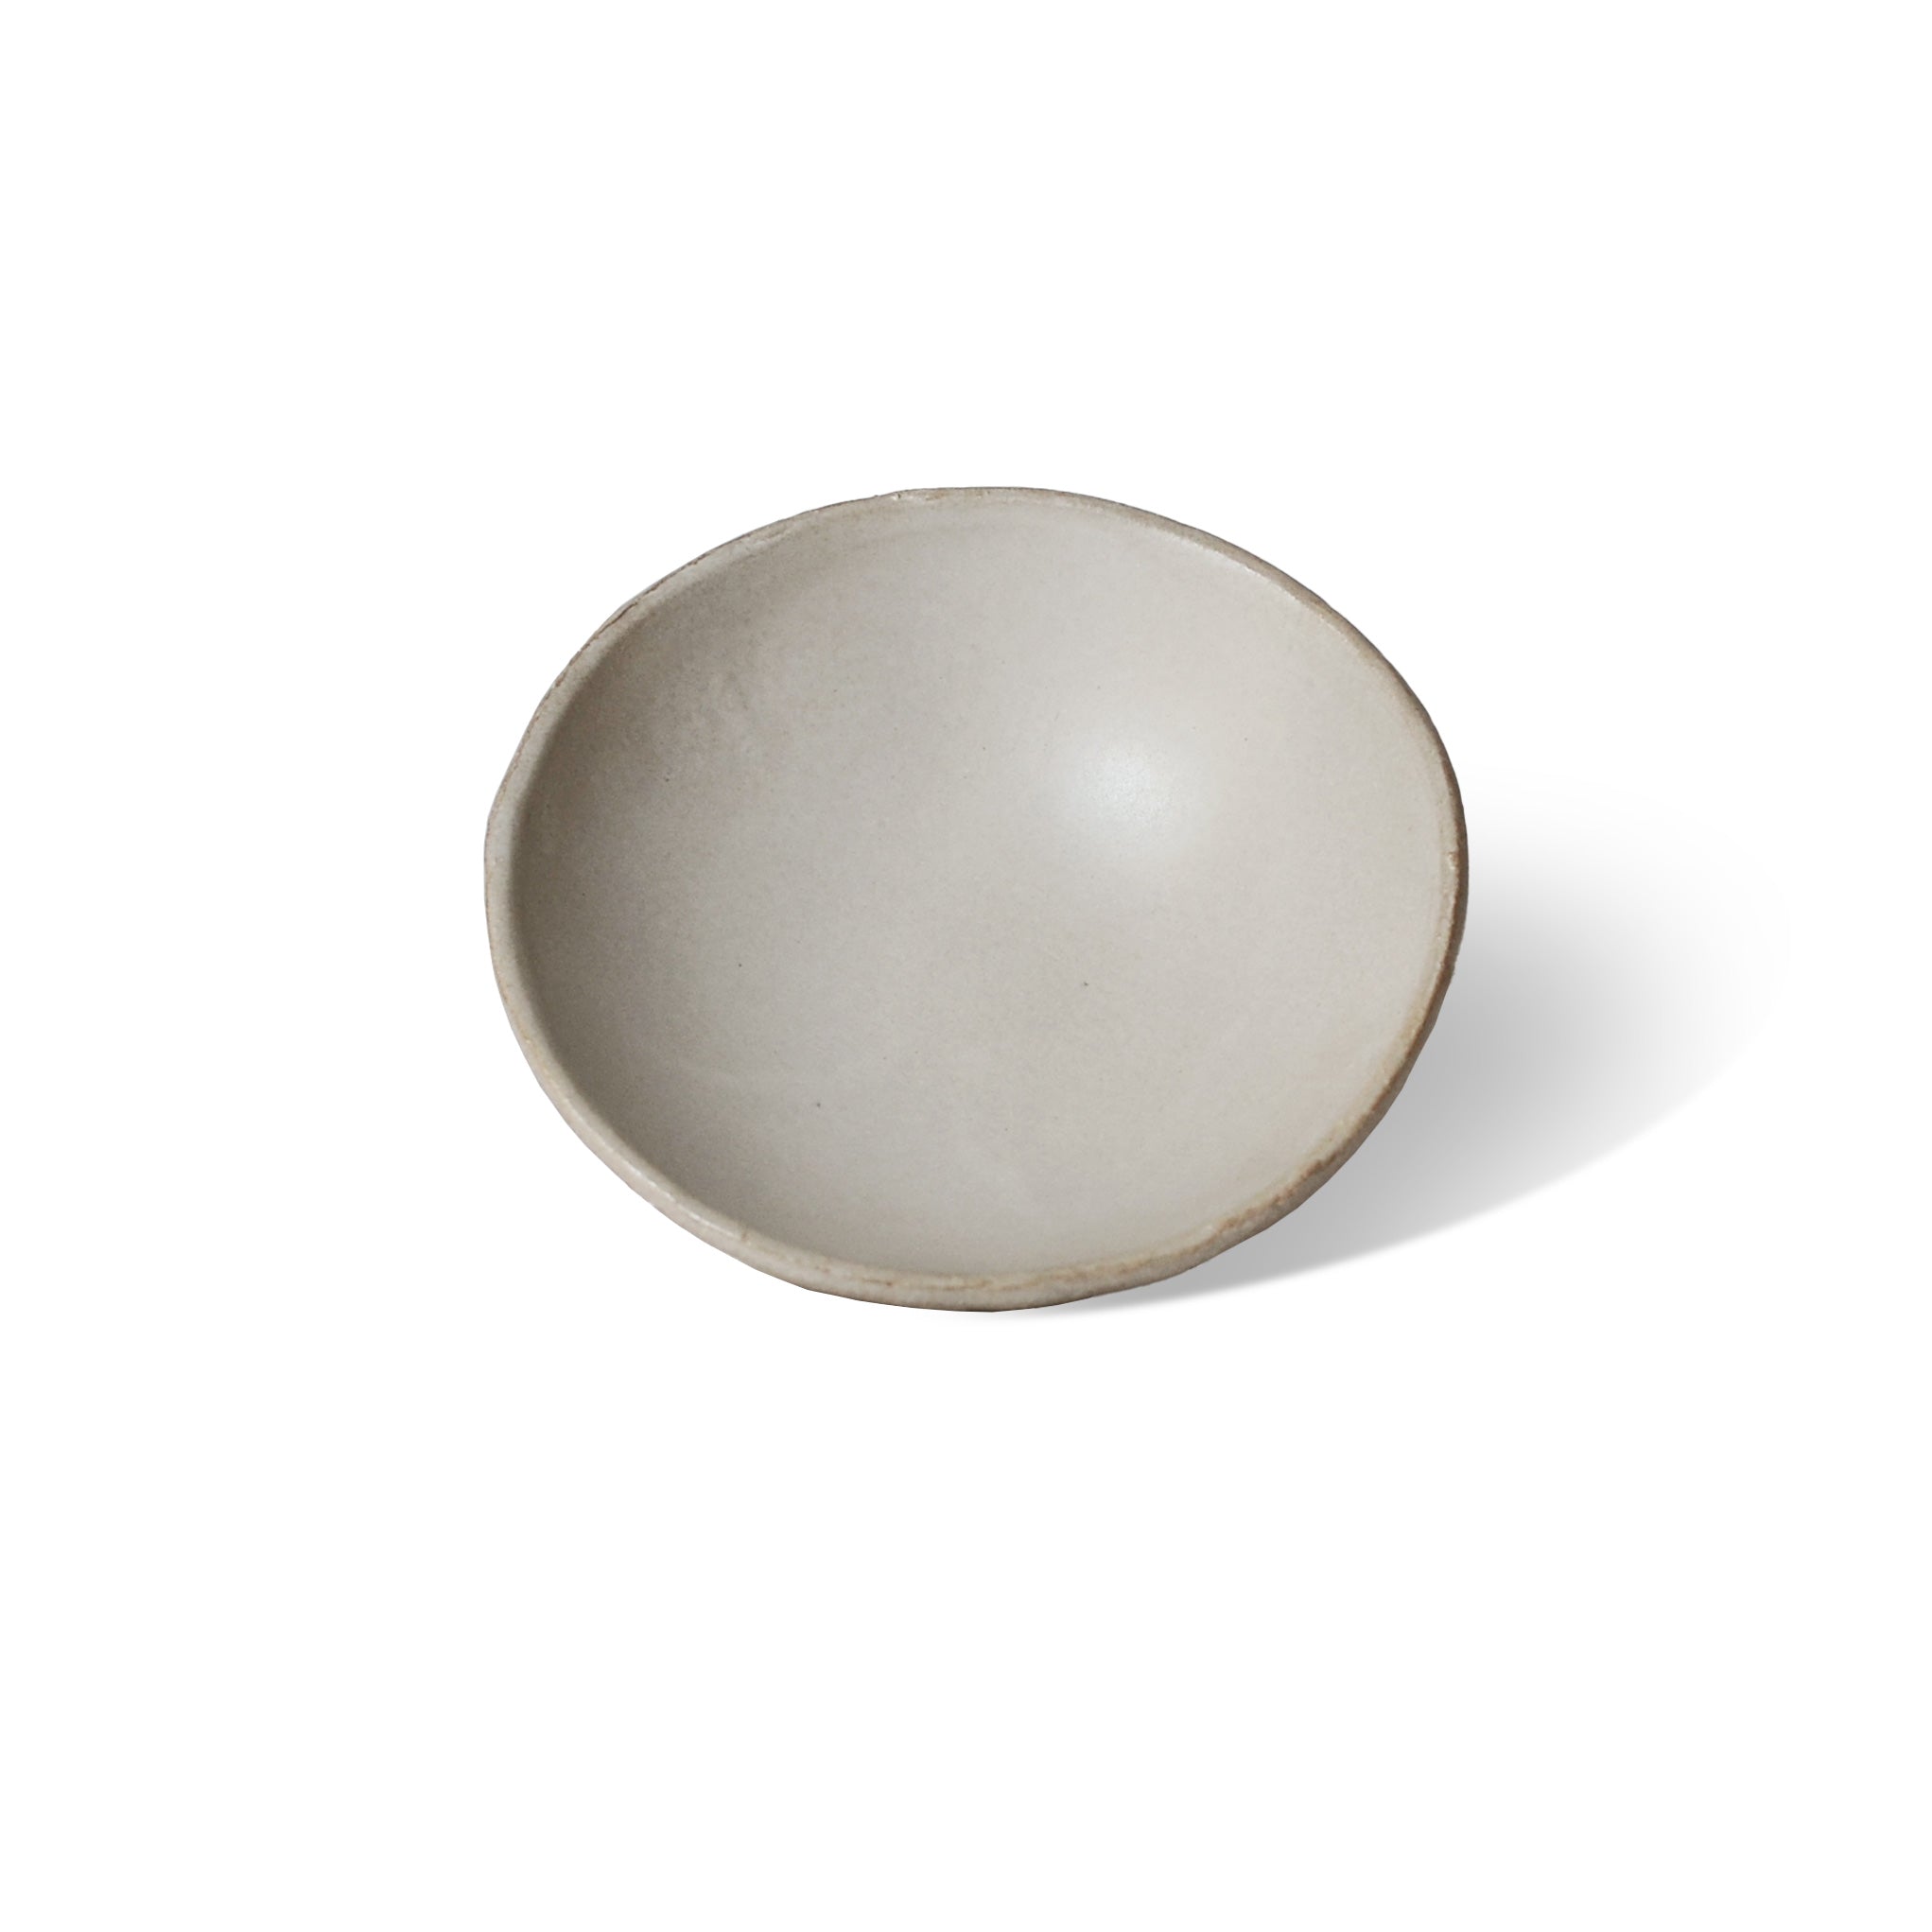 a light grey ceramic incense bowl